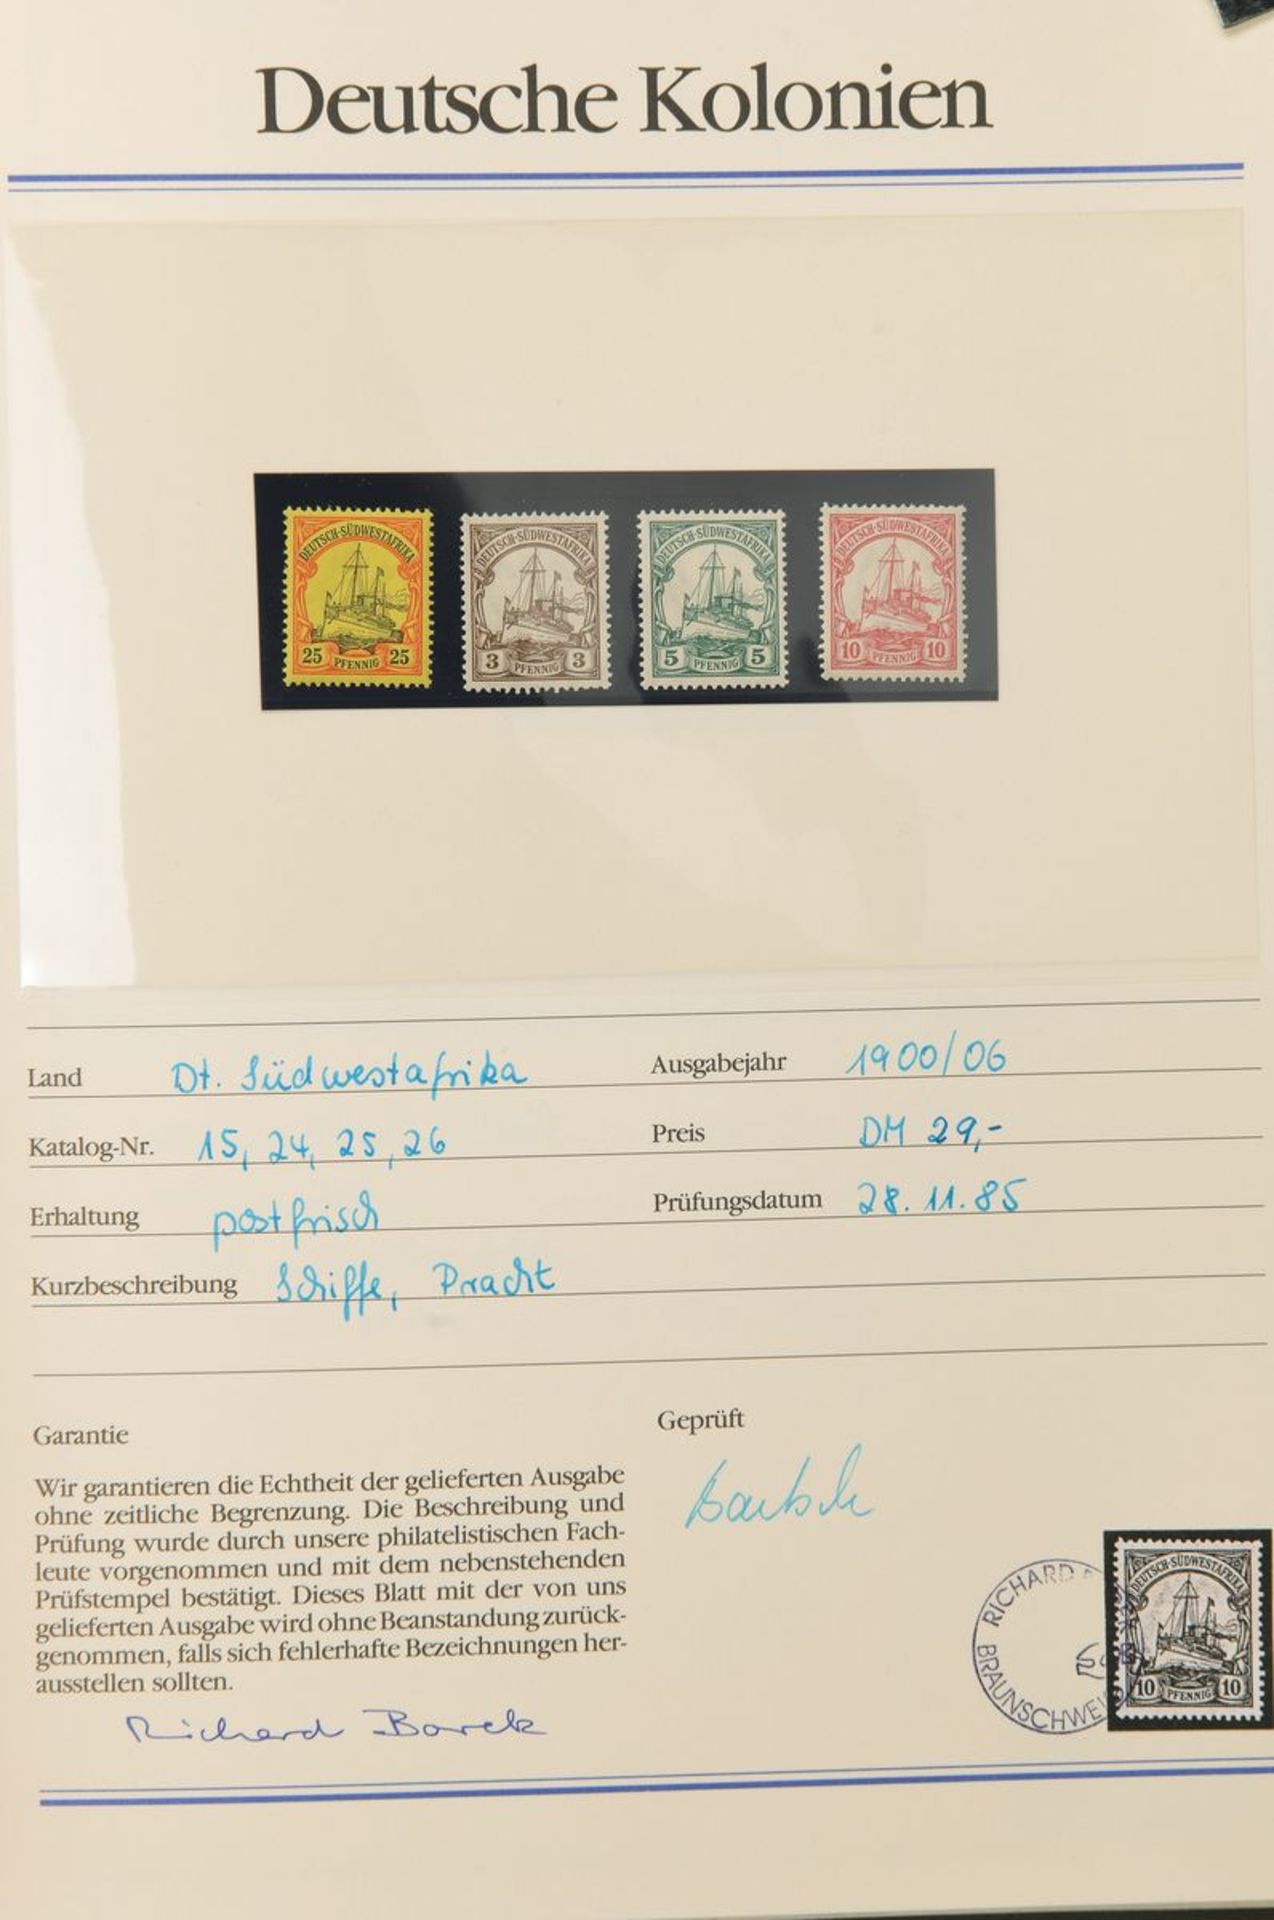 Zwei Alben Briefmarken, Deutsches Reich 1871-1945 und Deutsche Kolonien,